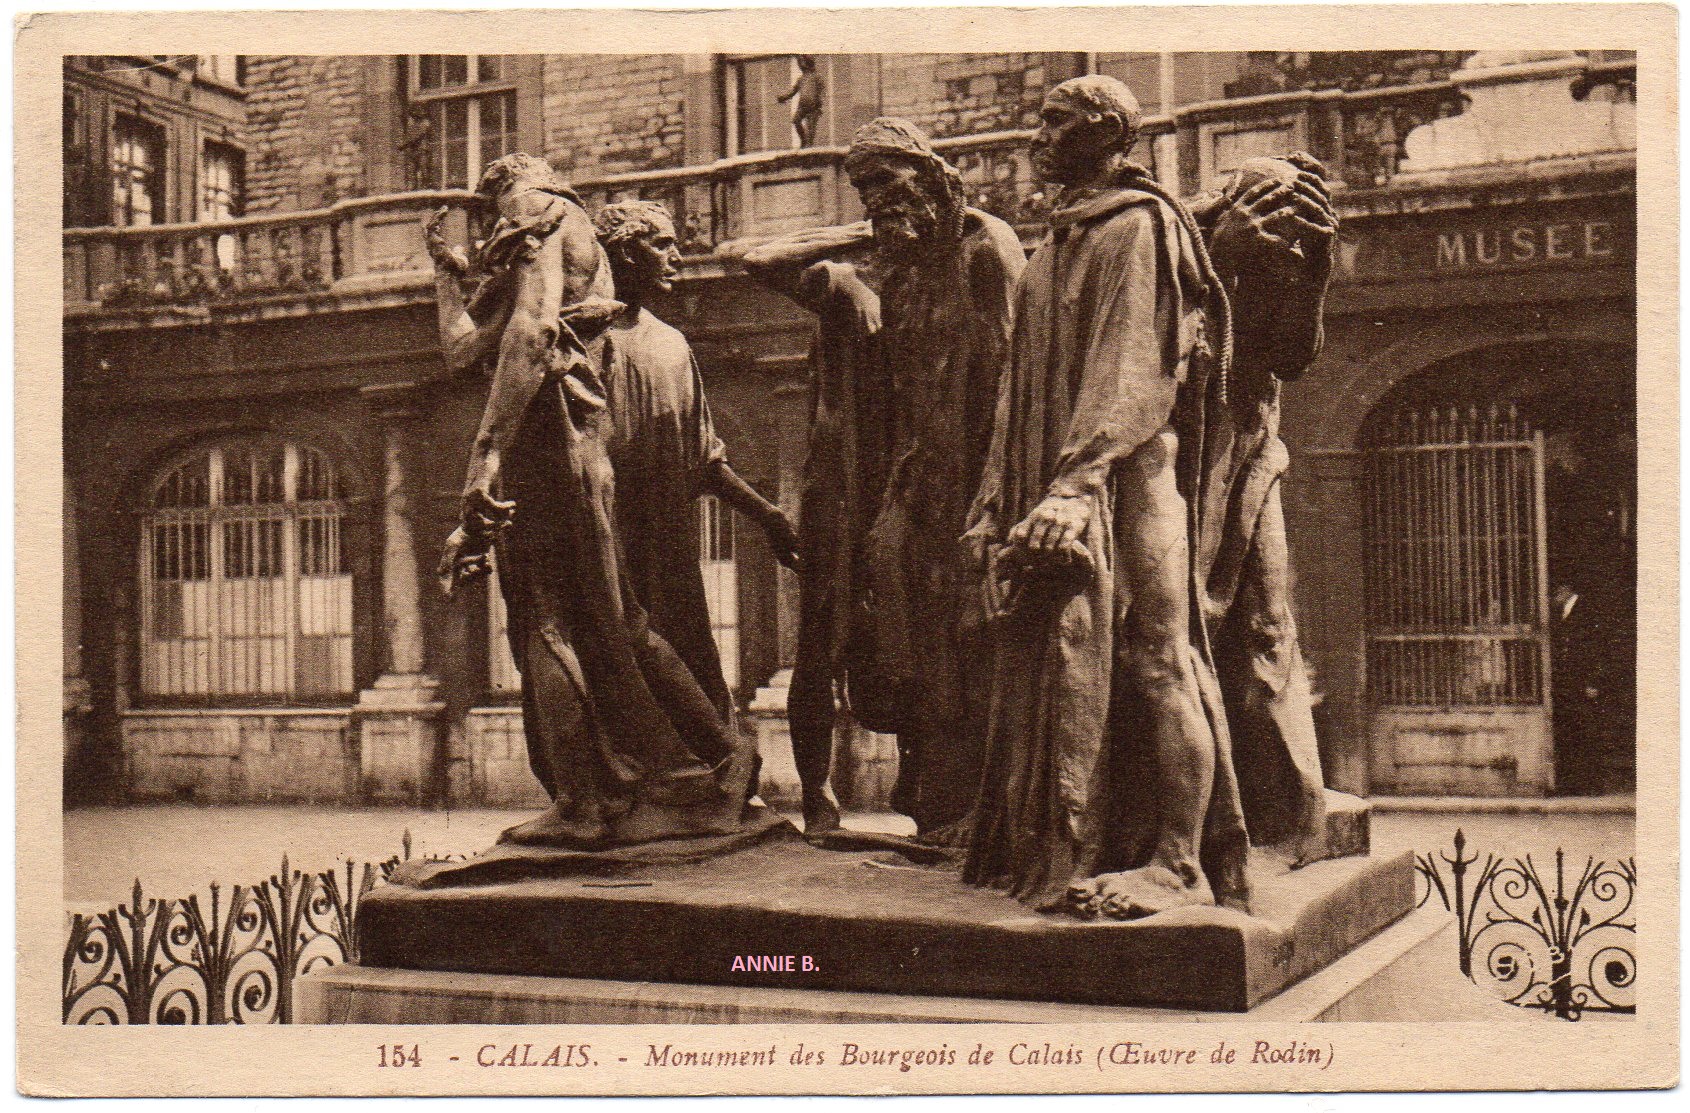  Le monument des Six Bourgeois de Calais